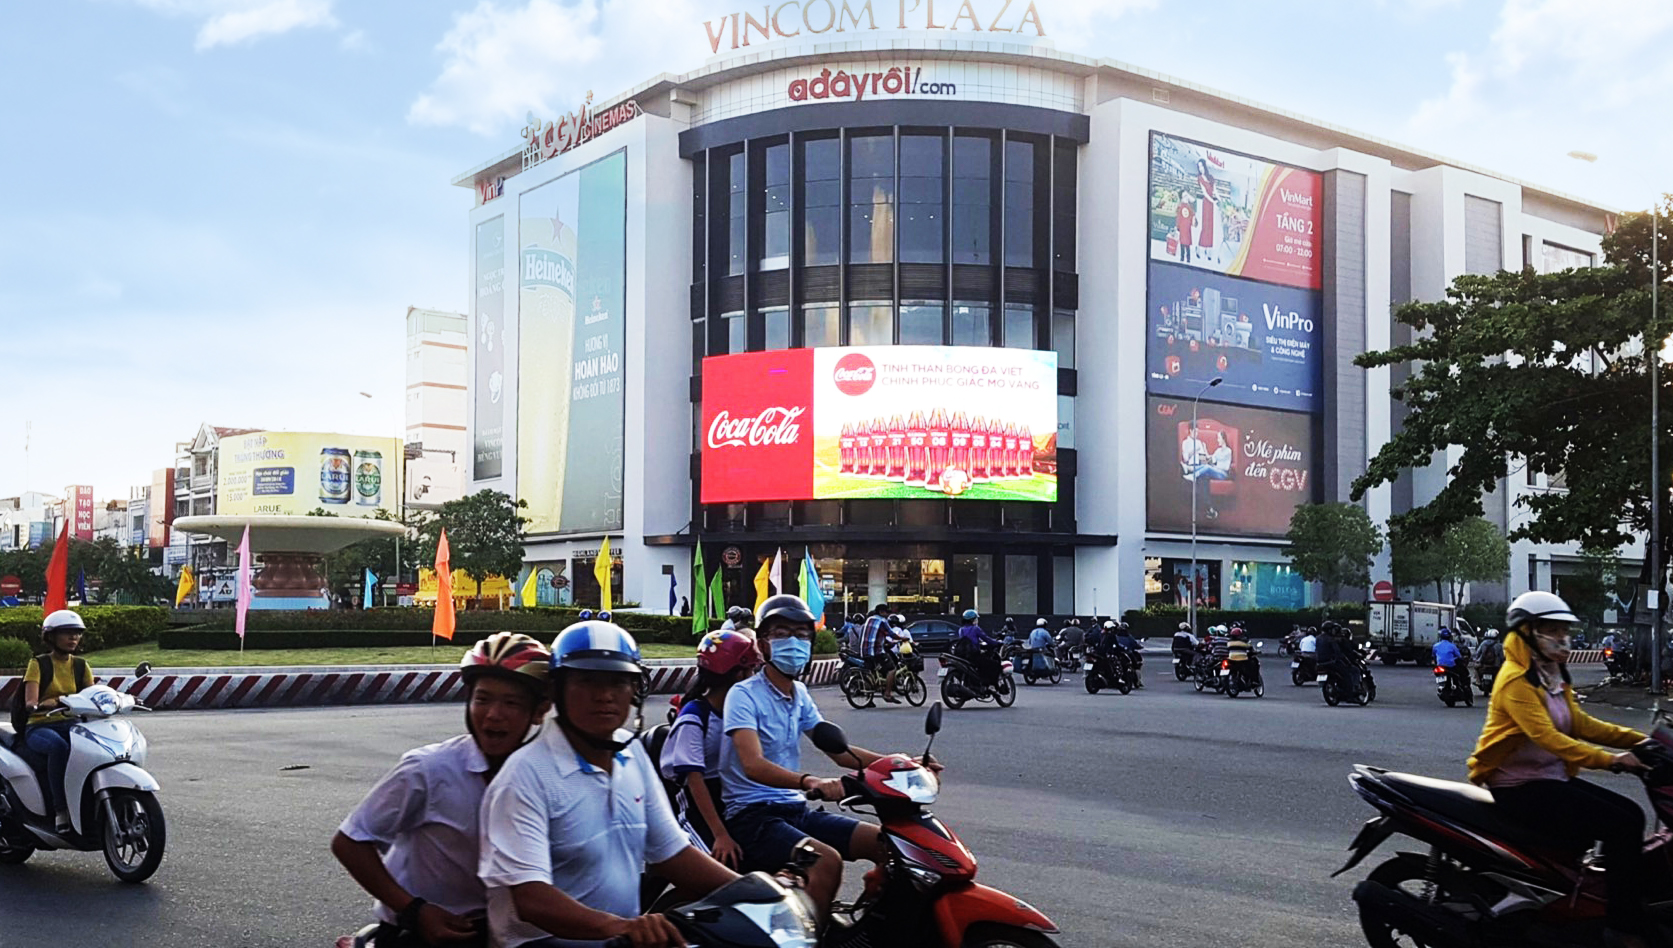 MACO ทุ่ม 3.5 แสนล้านดองเวียดนาม คิดเป็น 457.2 ล้านบาท! รุกขยายเครือข่ายสื่อโฆษณานอกบ้านในเวียดนาม 